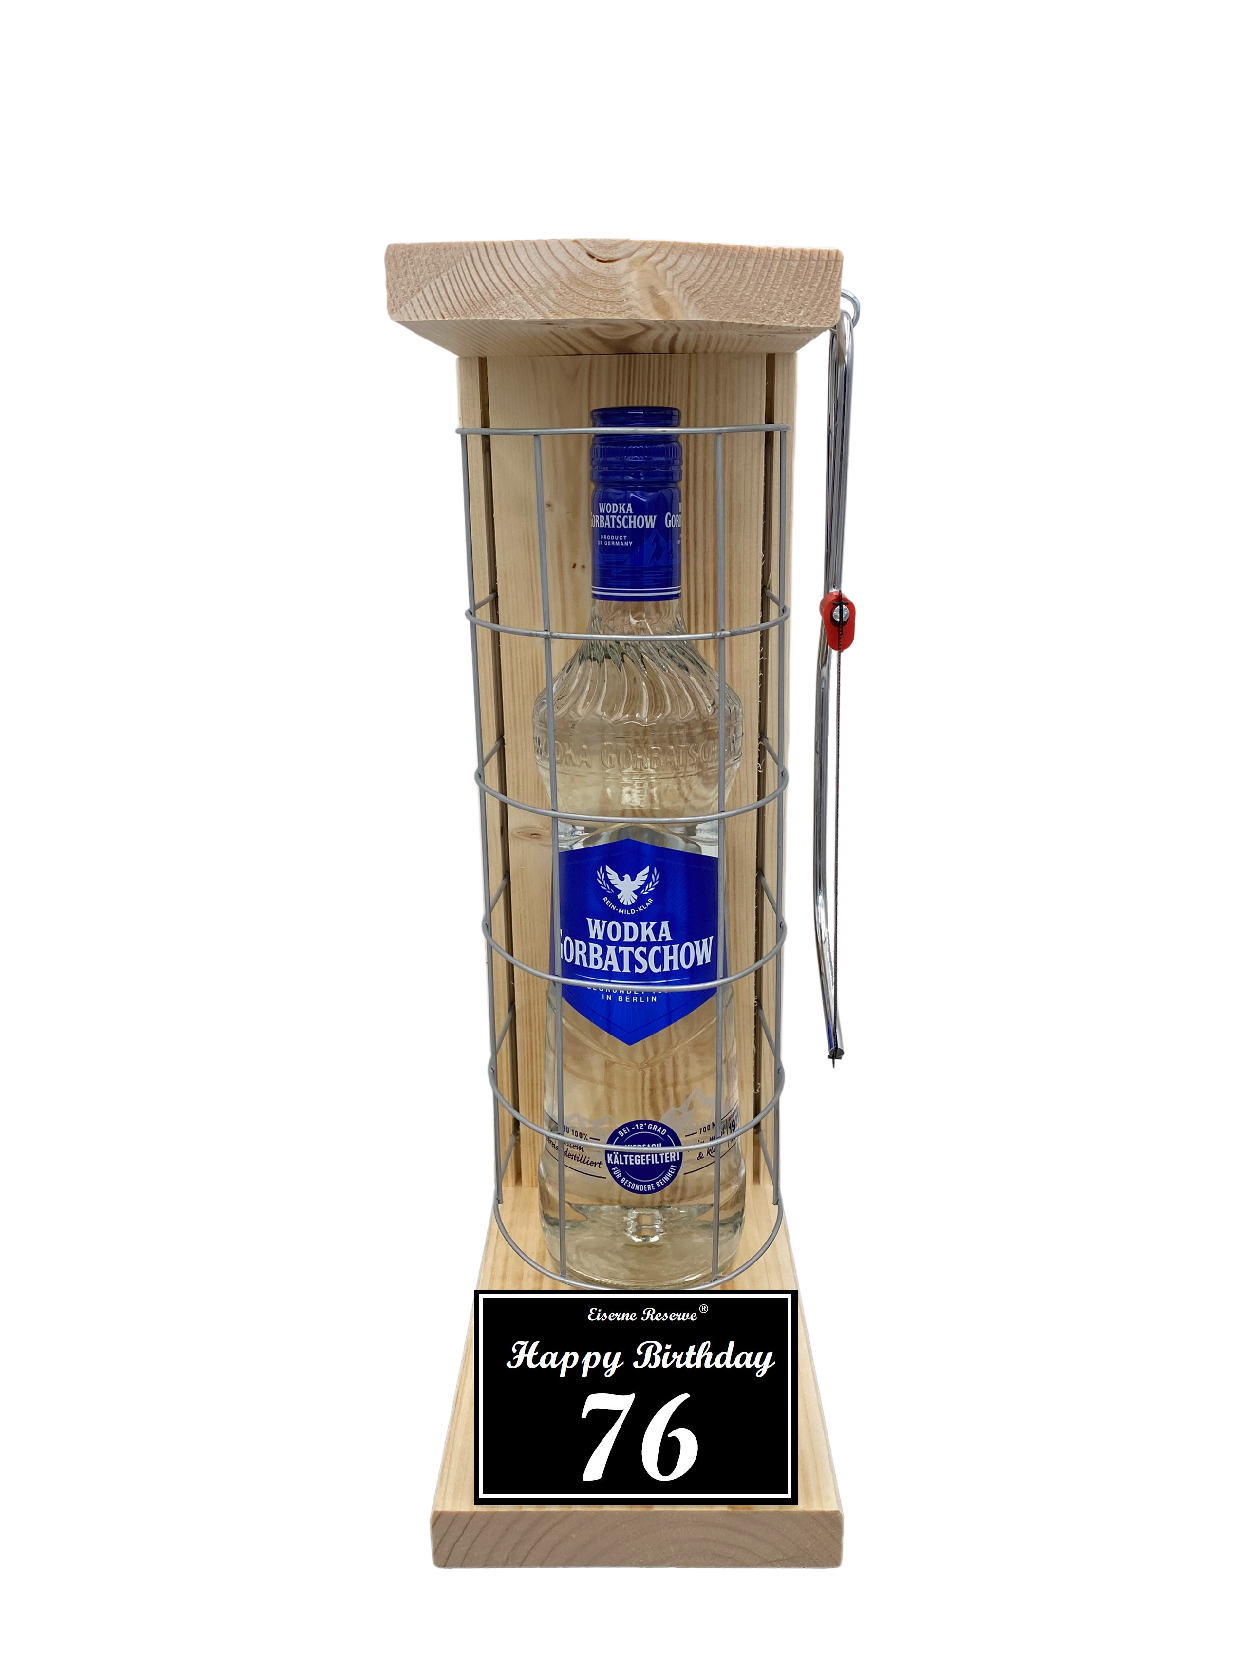 Wodka Geschenk zum 76 Geburtstag - Eiserne Reserve Gitterkäfig